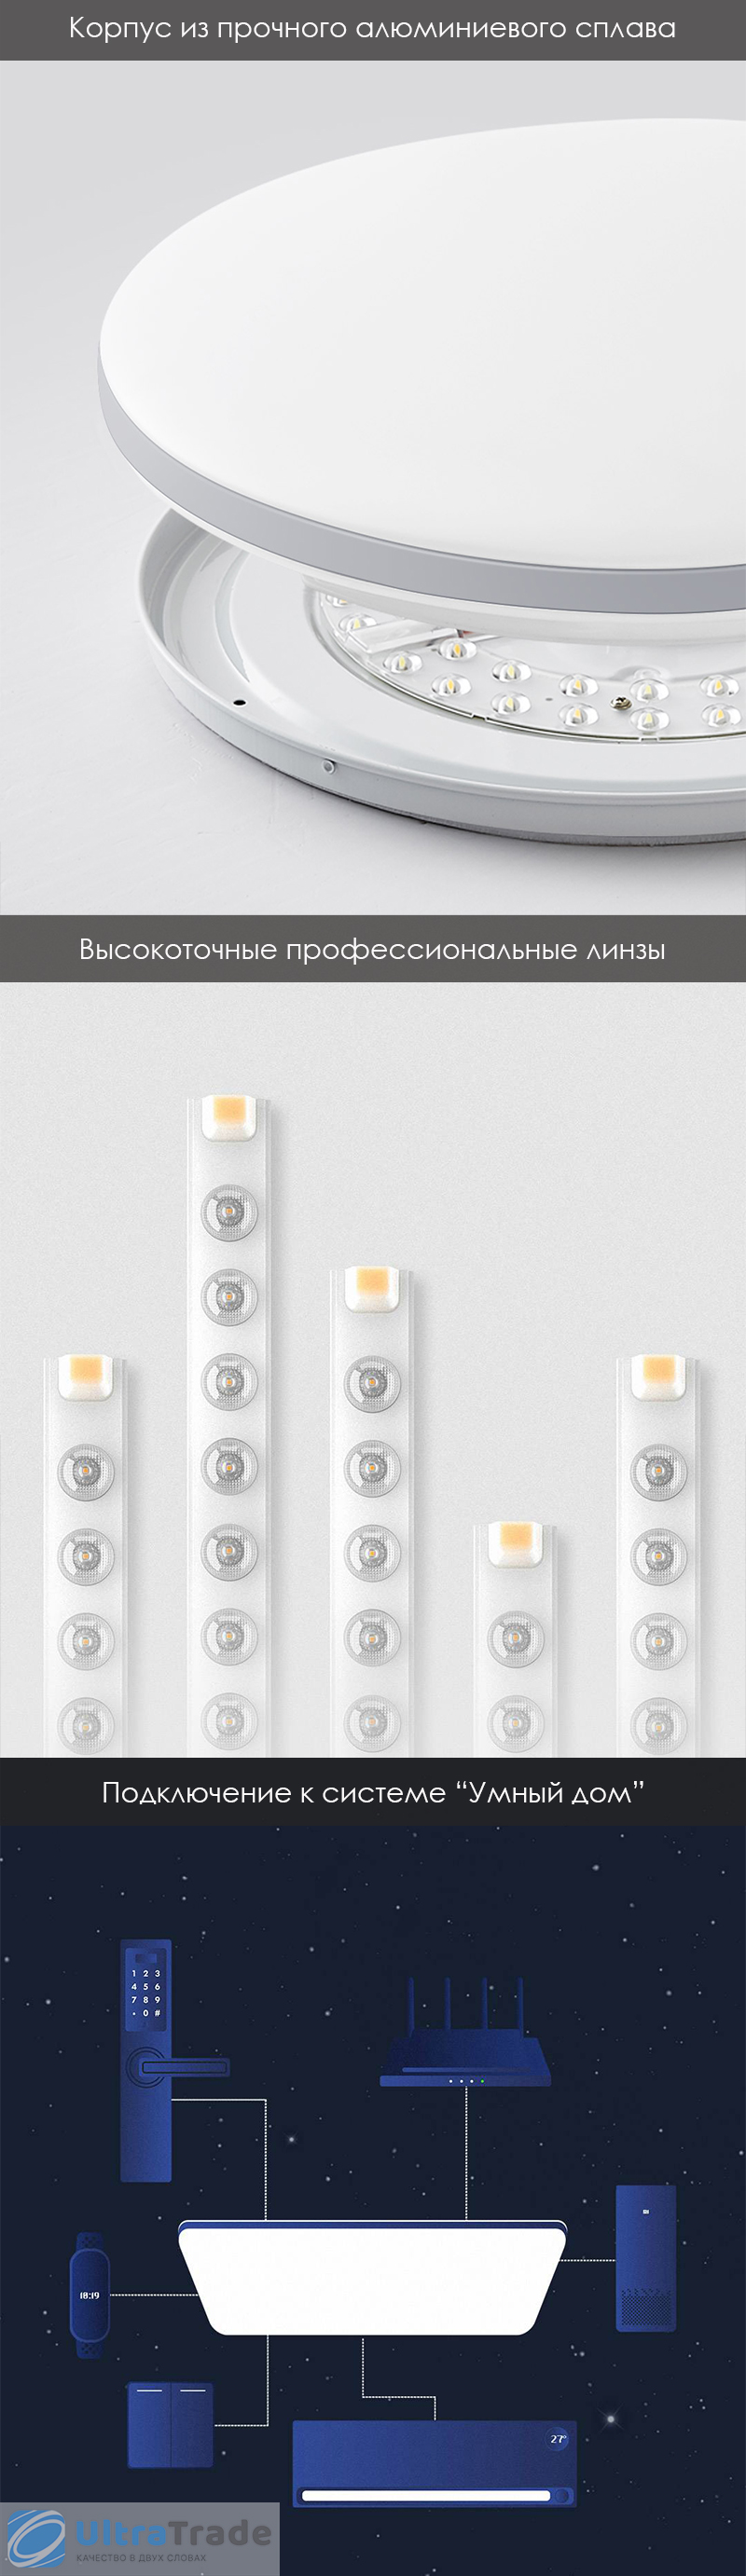 Умный потолочный светильник Xiaomi HuiZuo Bon Temps Series Intelligent Ceiling Lamp Round 36W Elephant Tooth White